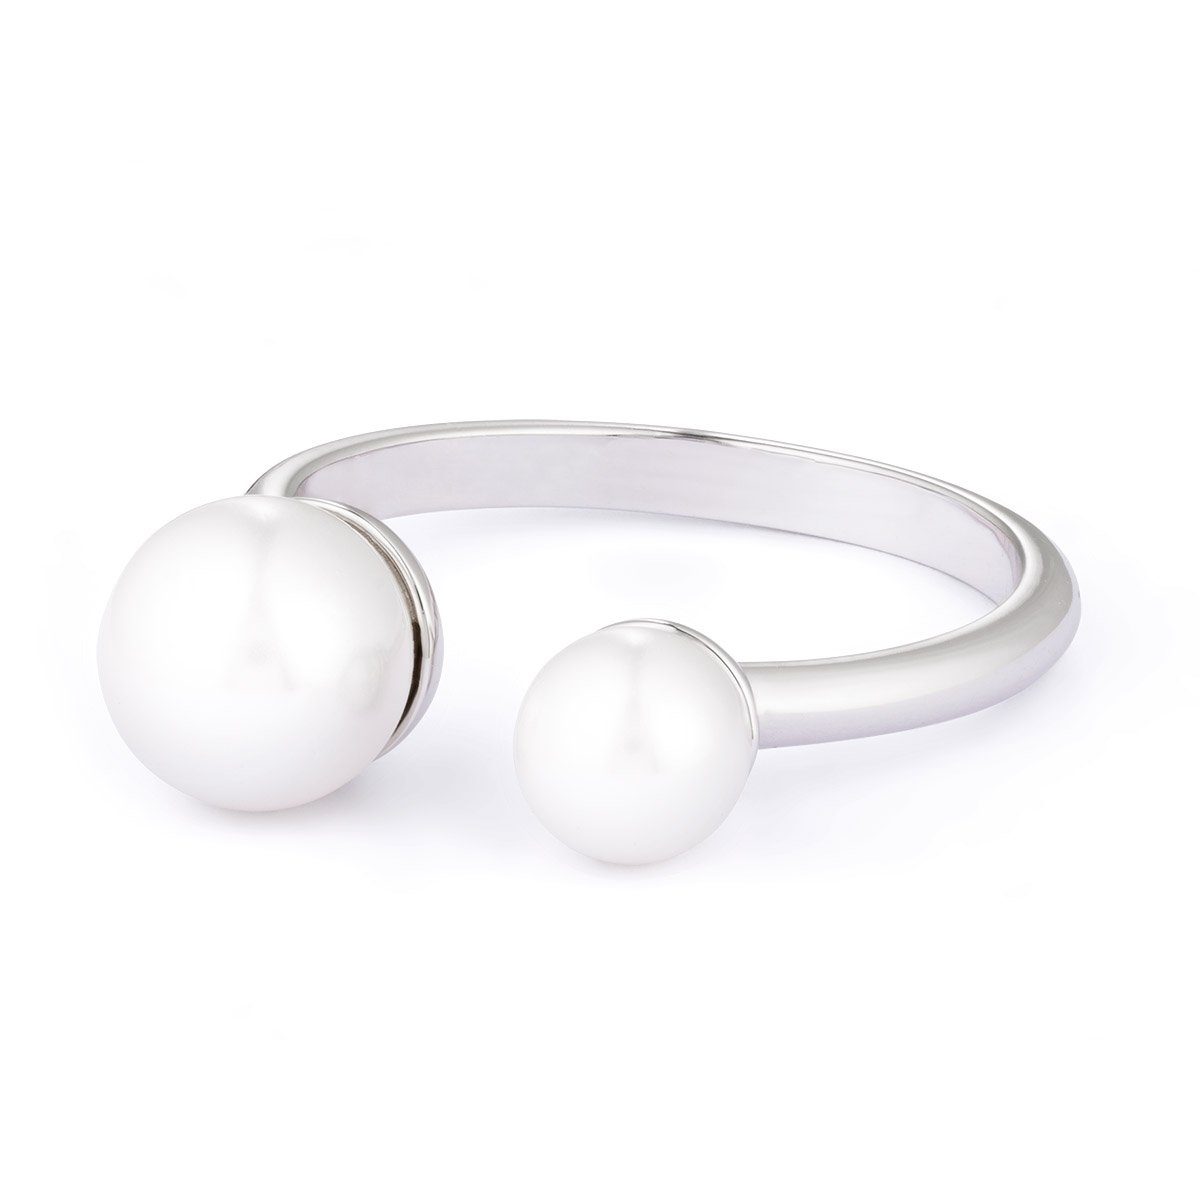 Pippa & Jean Perlenring silber, verziert mit Perlen von Swarovski®